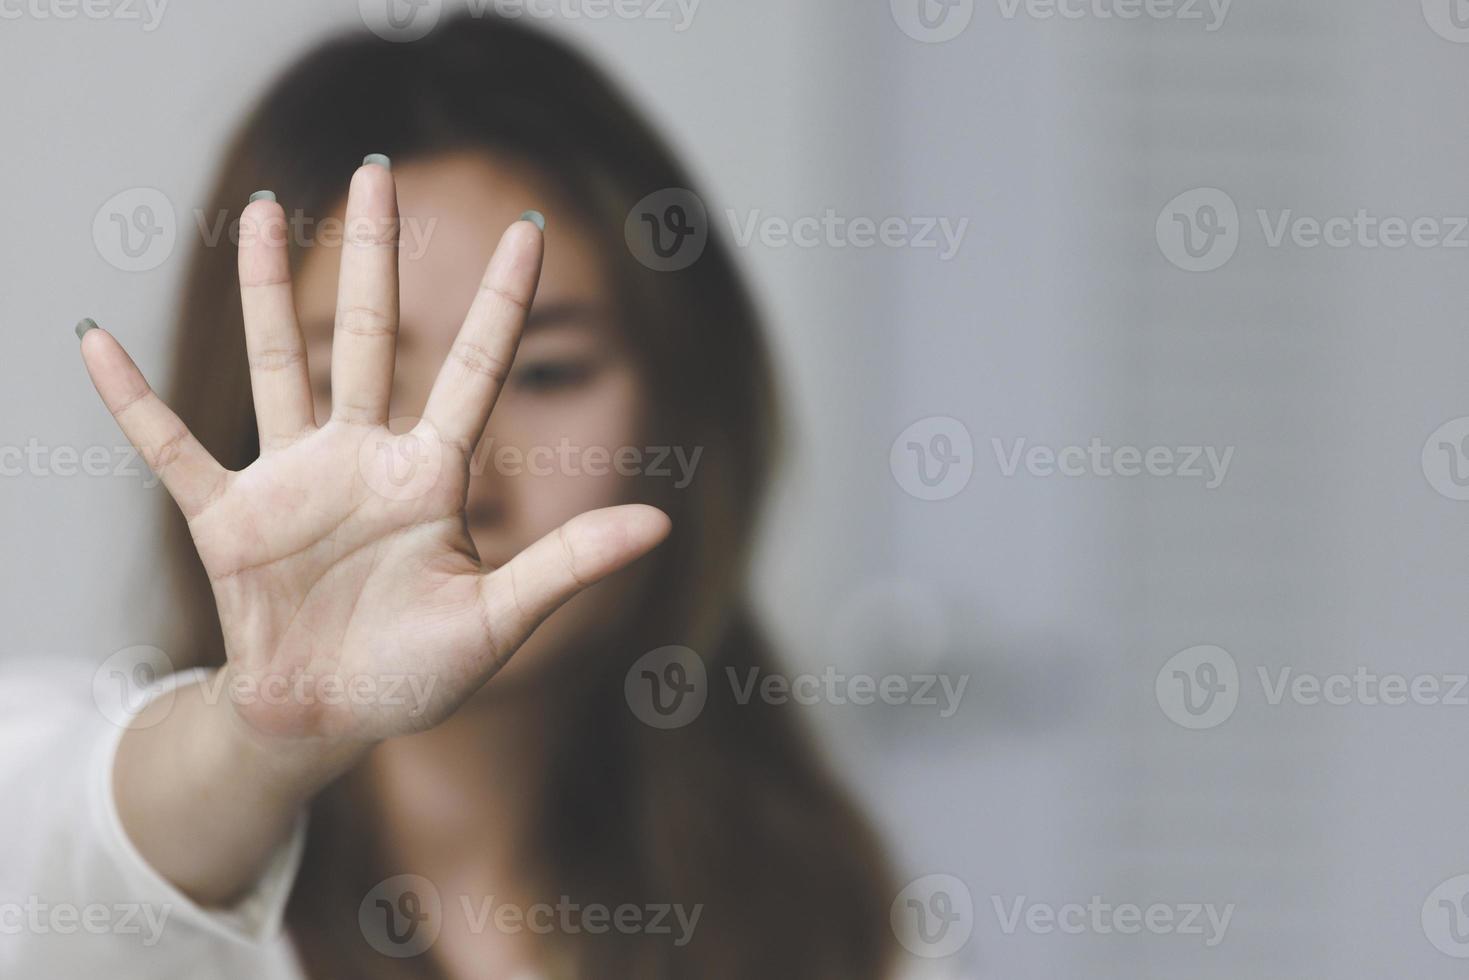 vrouw die haar hand opsteekt om campagne te stoppen om geweld tegen vrouwen, waaronder verkrachting en mensenhandel, te stoppen. foto